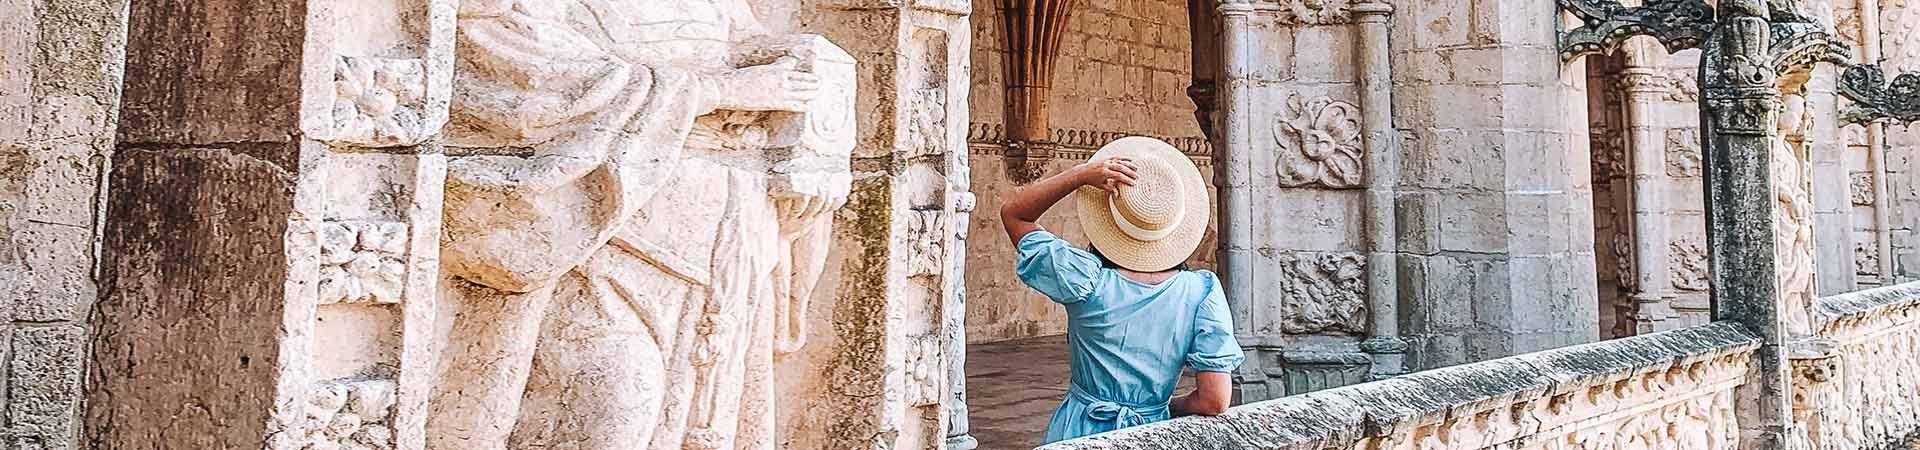 Imagem composta por uma mulher vista de costas enquanto contempla um monumento de pedra branca. A mulher tem longos cabelos negros e está usando um vestido azul e segurando um chapéu de palha bege na mão esquerda.